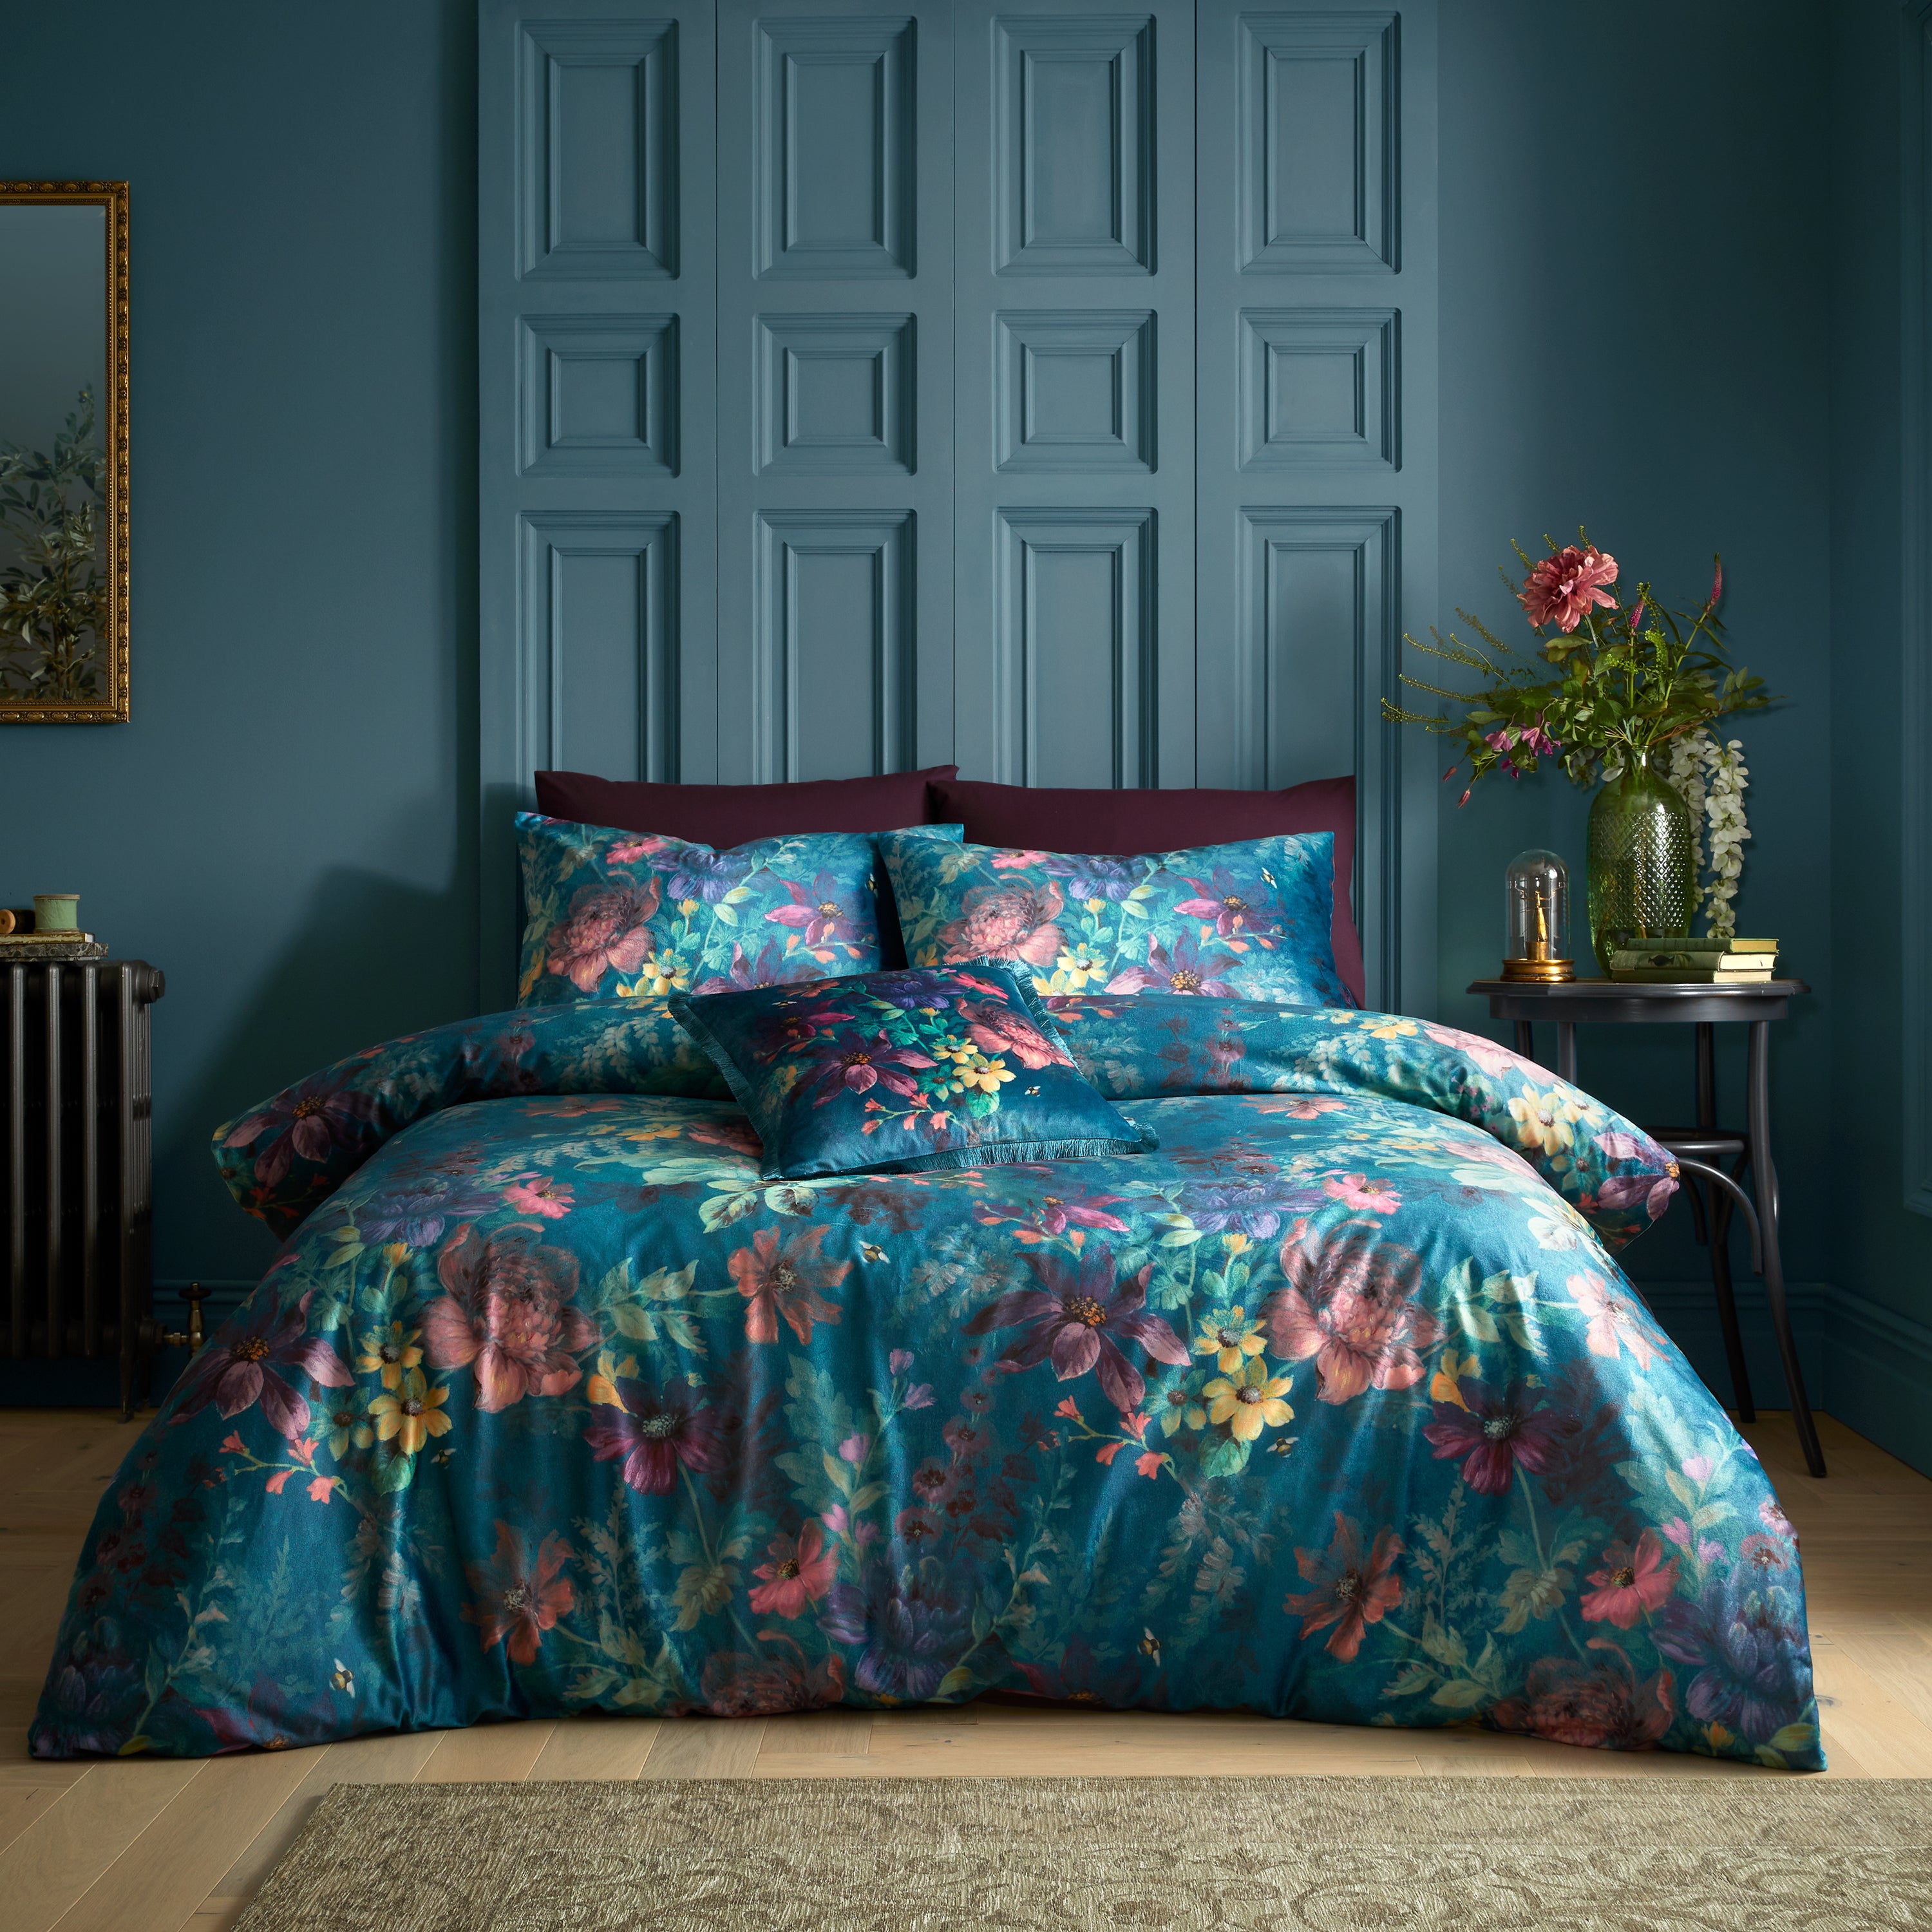 Photos - Bed Linen Catherine Lansfield Bridgerton By  Romantic Floral Duvet Cover & Pillowcase 